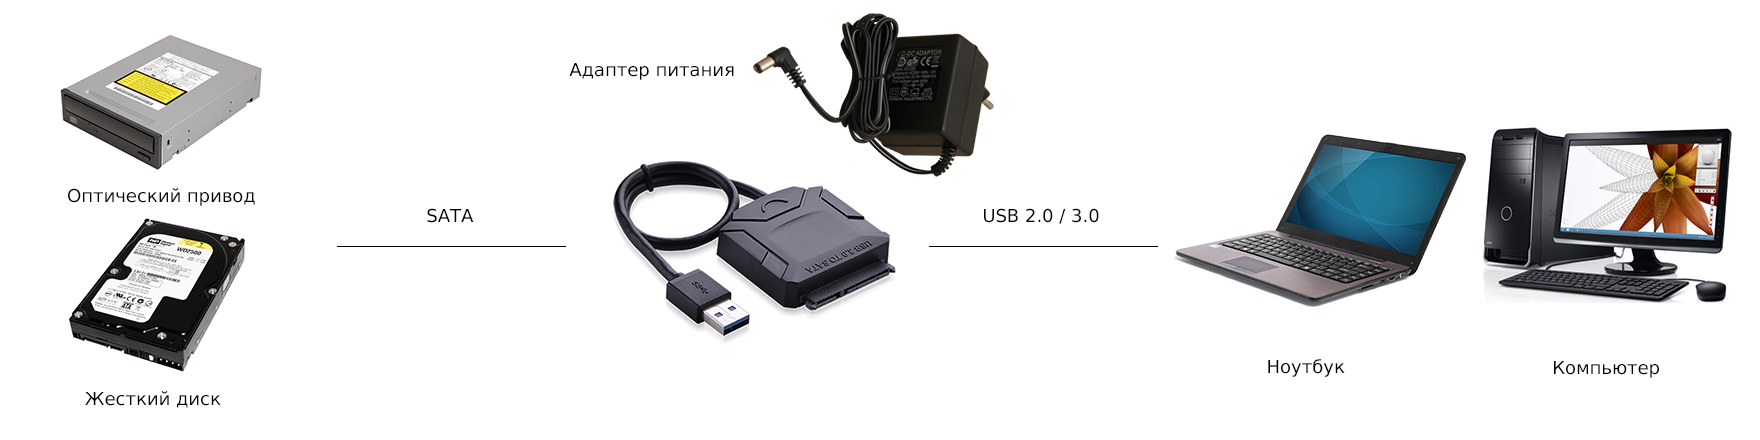 Конвертер-переходник SATA на USB 3.0 с поддержкой 2,5"и 3,5" HDD